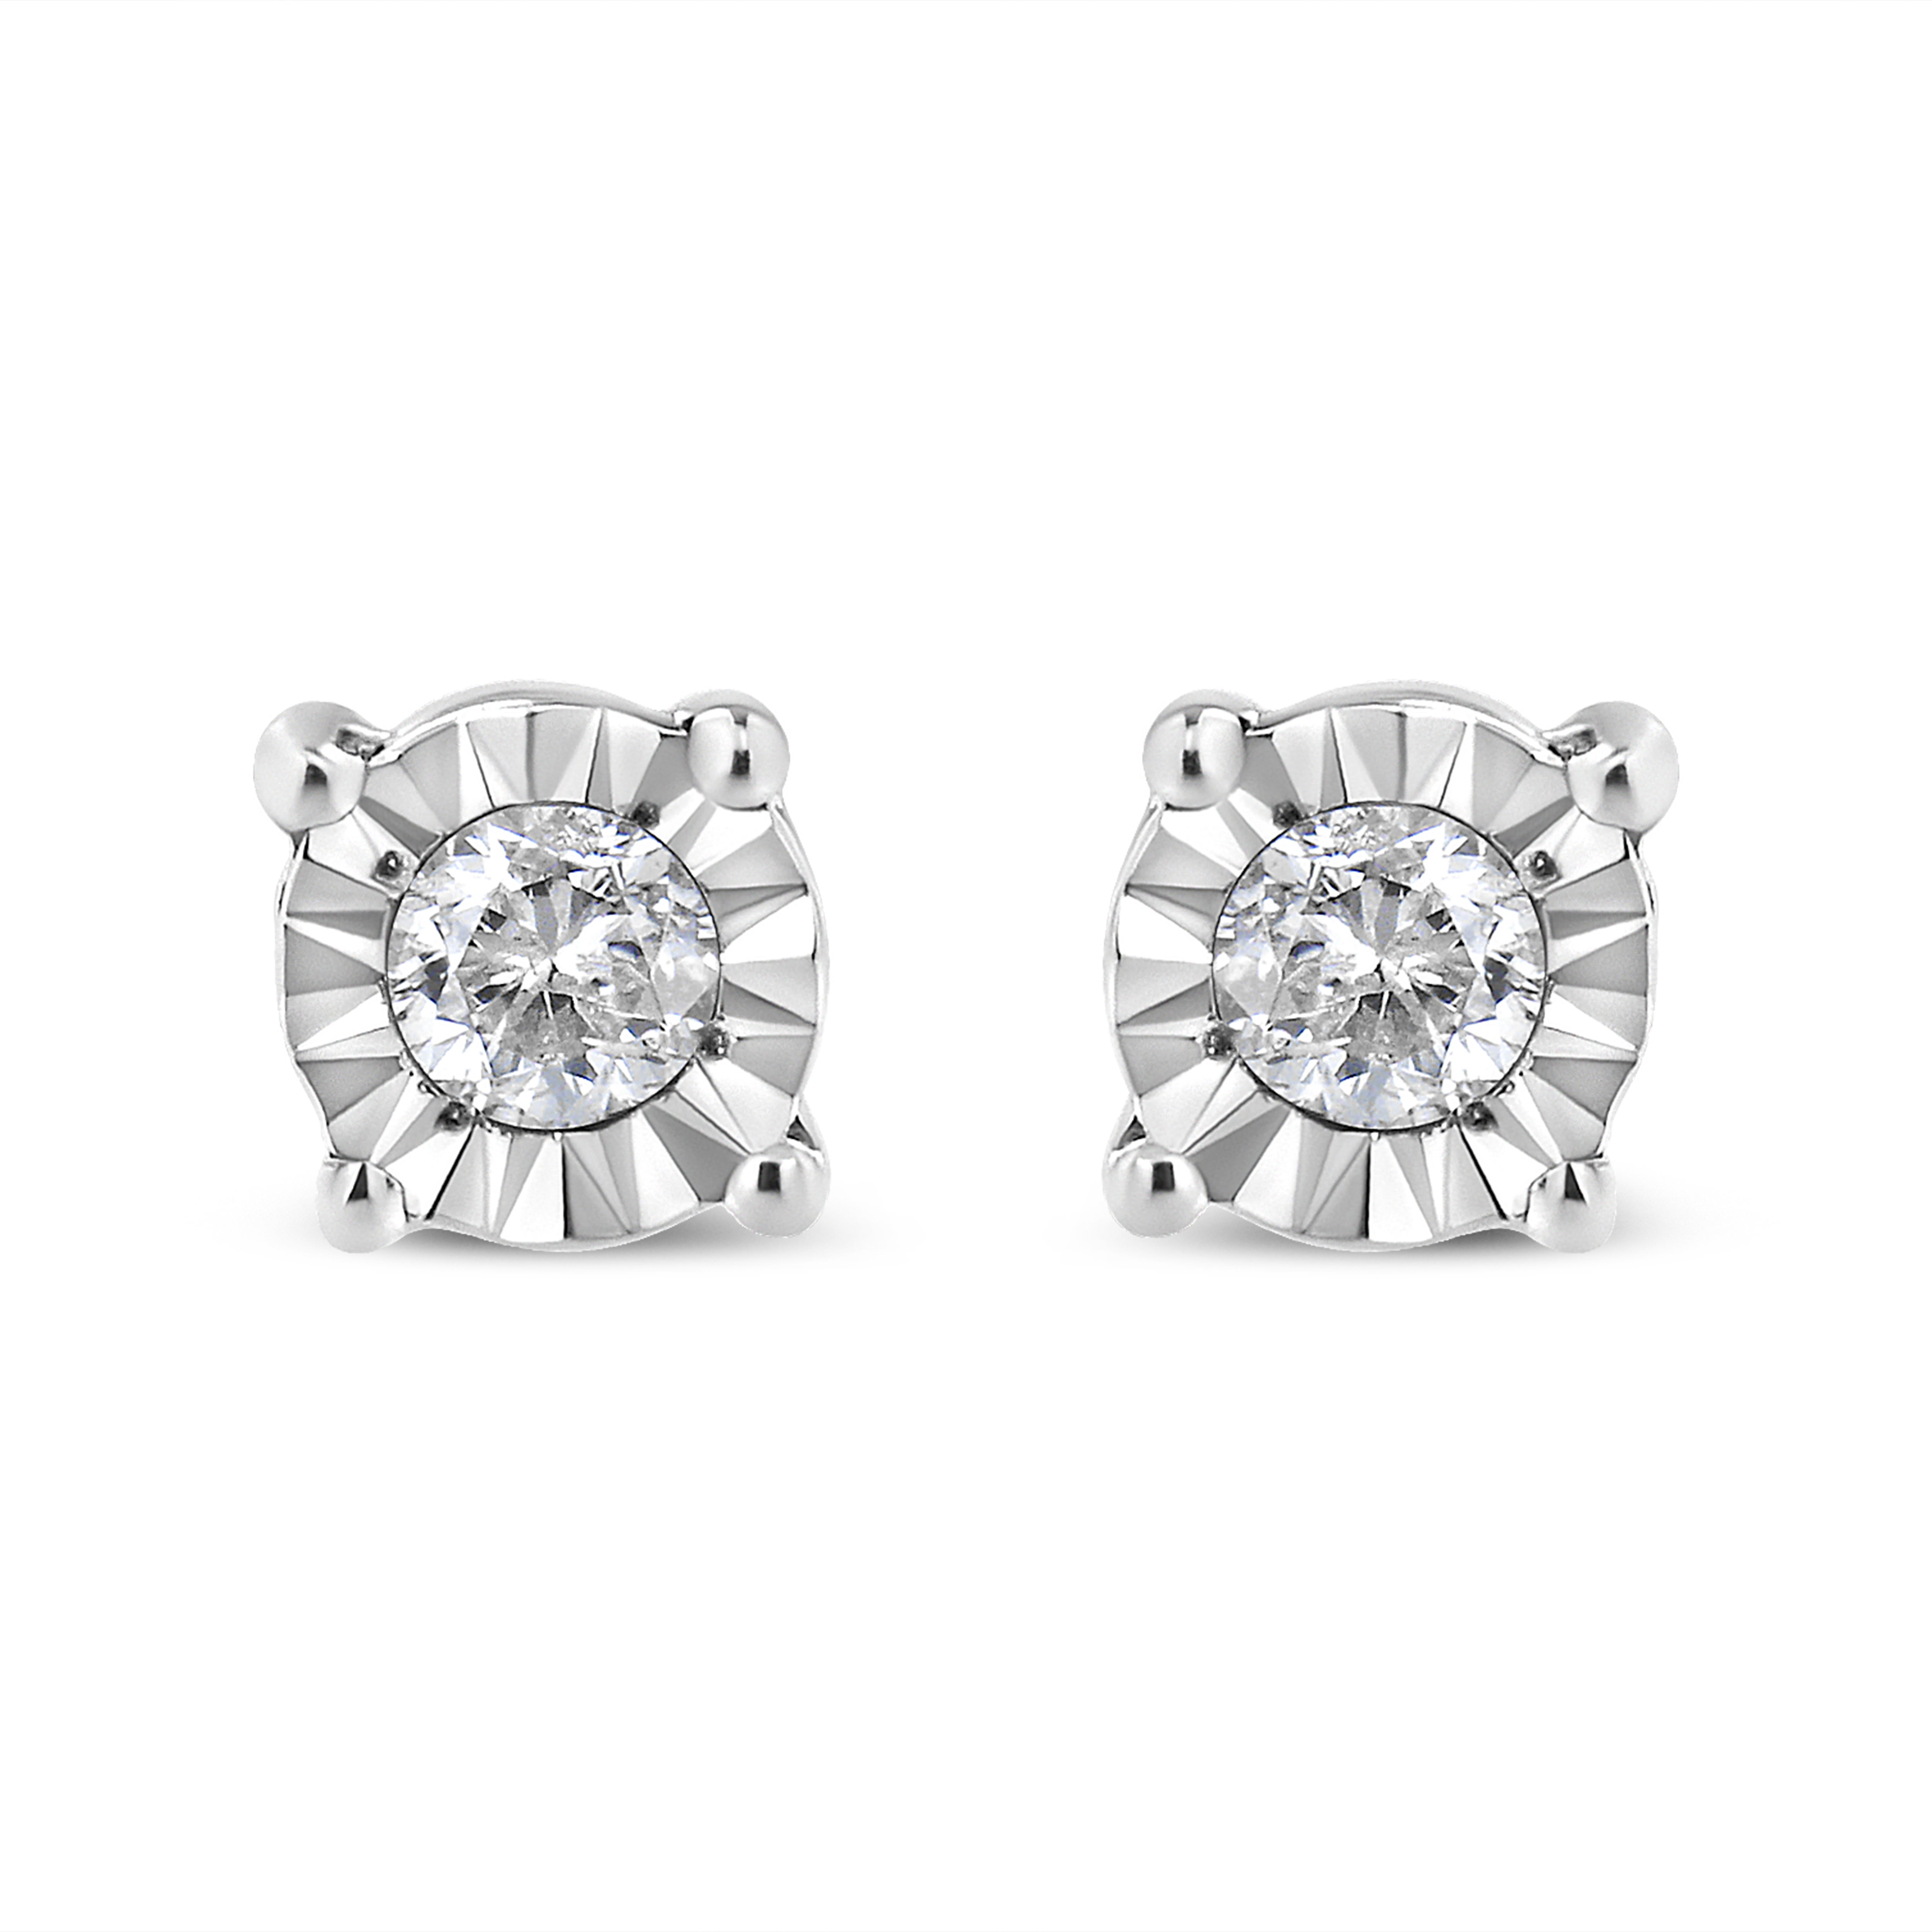 1/10 Carat Diamond Stud Earring In Sterling Silver